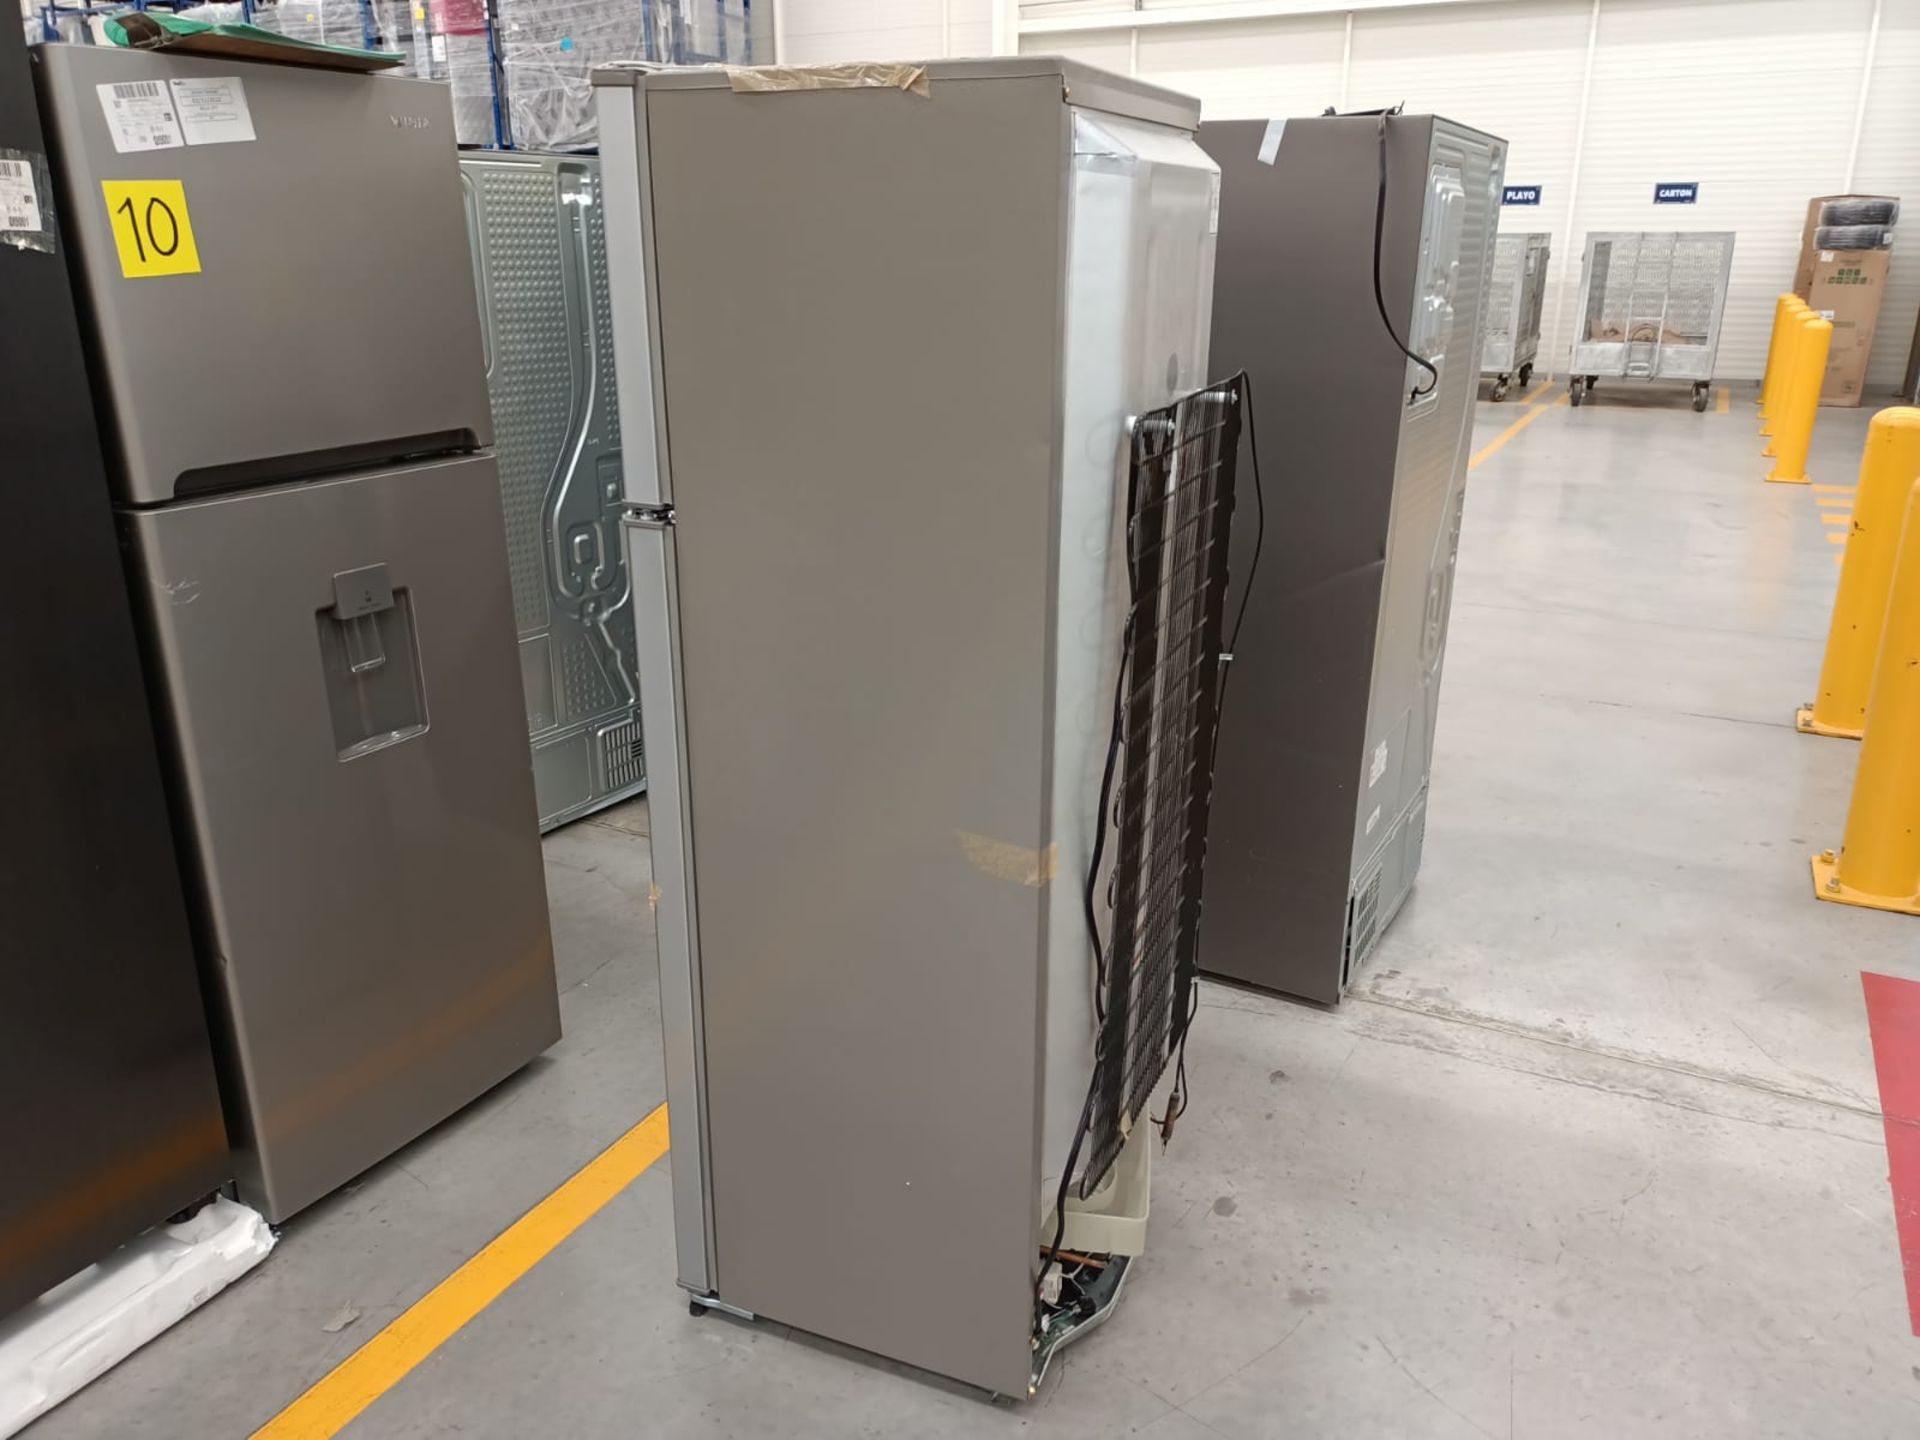 Lote de 2 refrigeradores incluye: 1 refrigerador marca Samsung, modelo RF22A4010S9/EM - Image 30 of 51